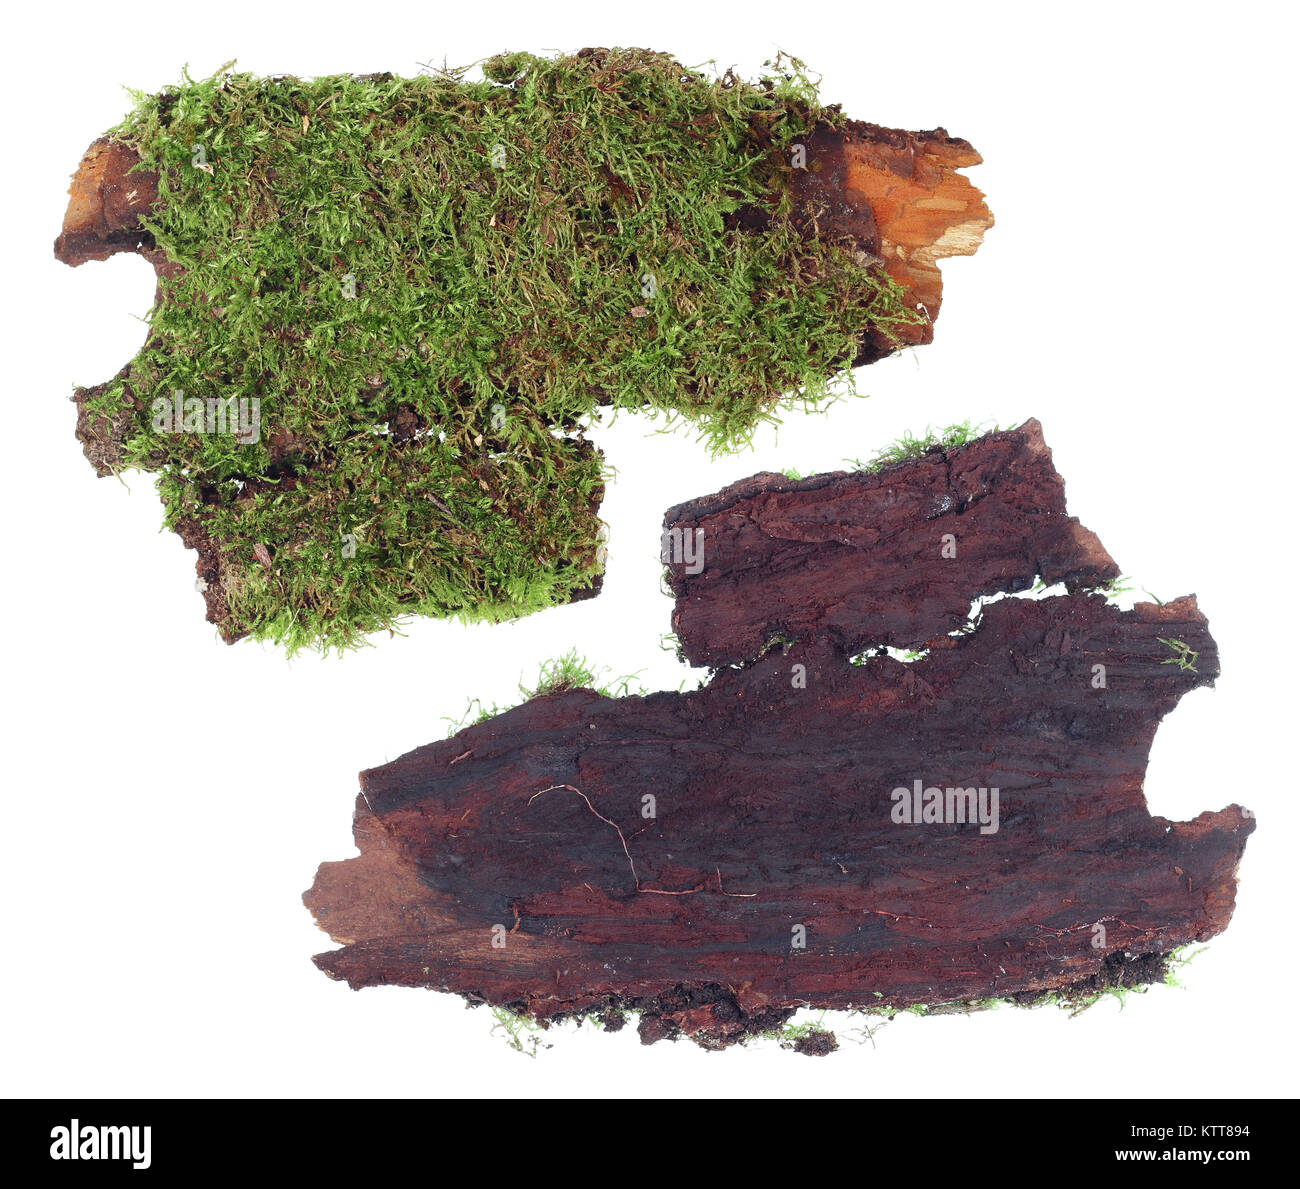 Le haut et le panneau inférieur d'un fragment de l'écorce de pin avec une colonie de la mousse de forêt verte. Studio isolated on white Banque D'Images